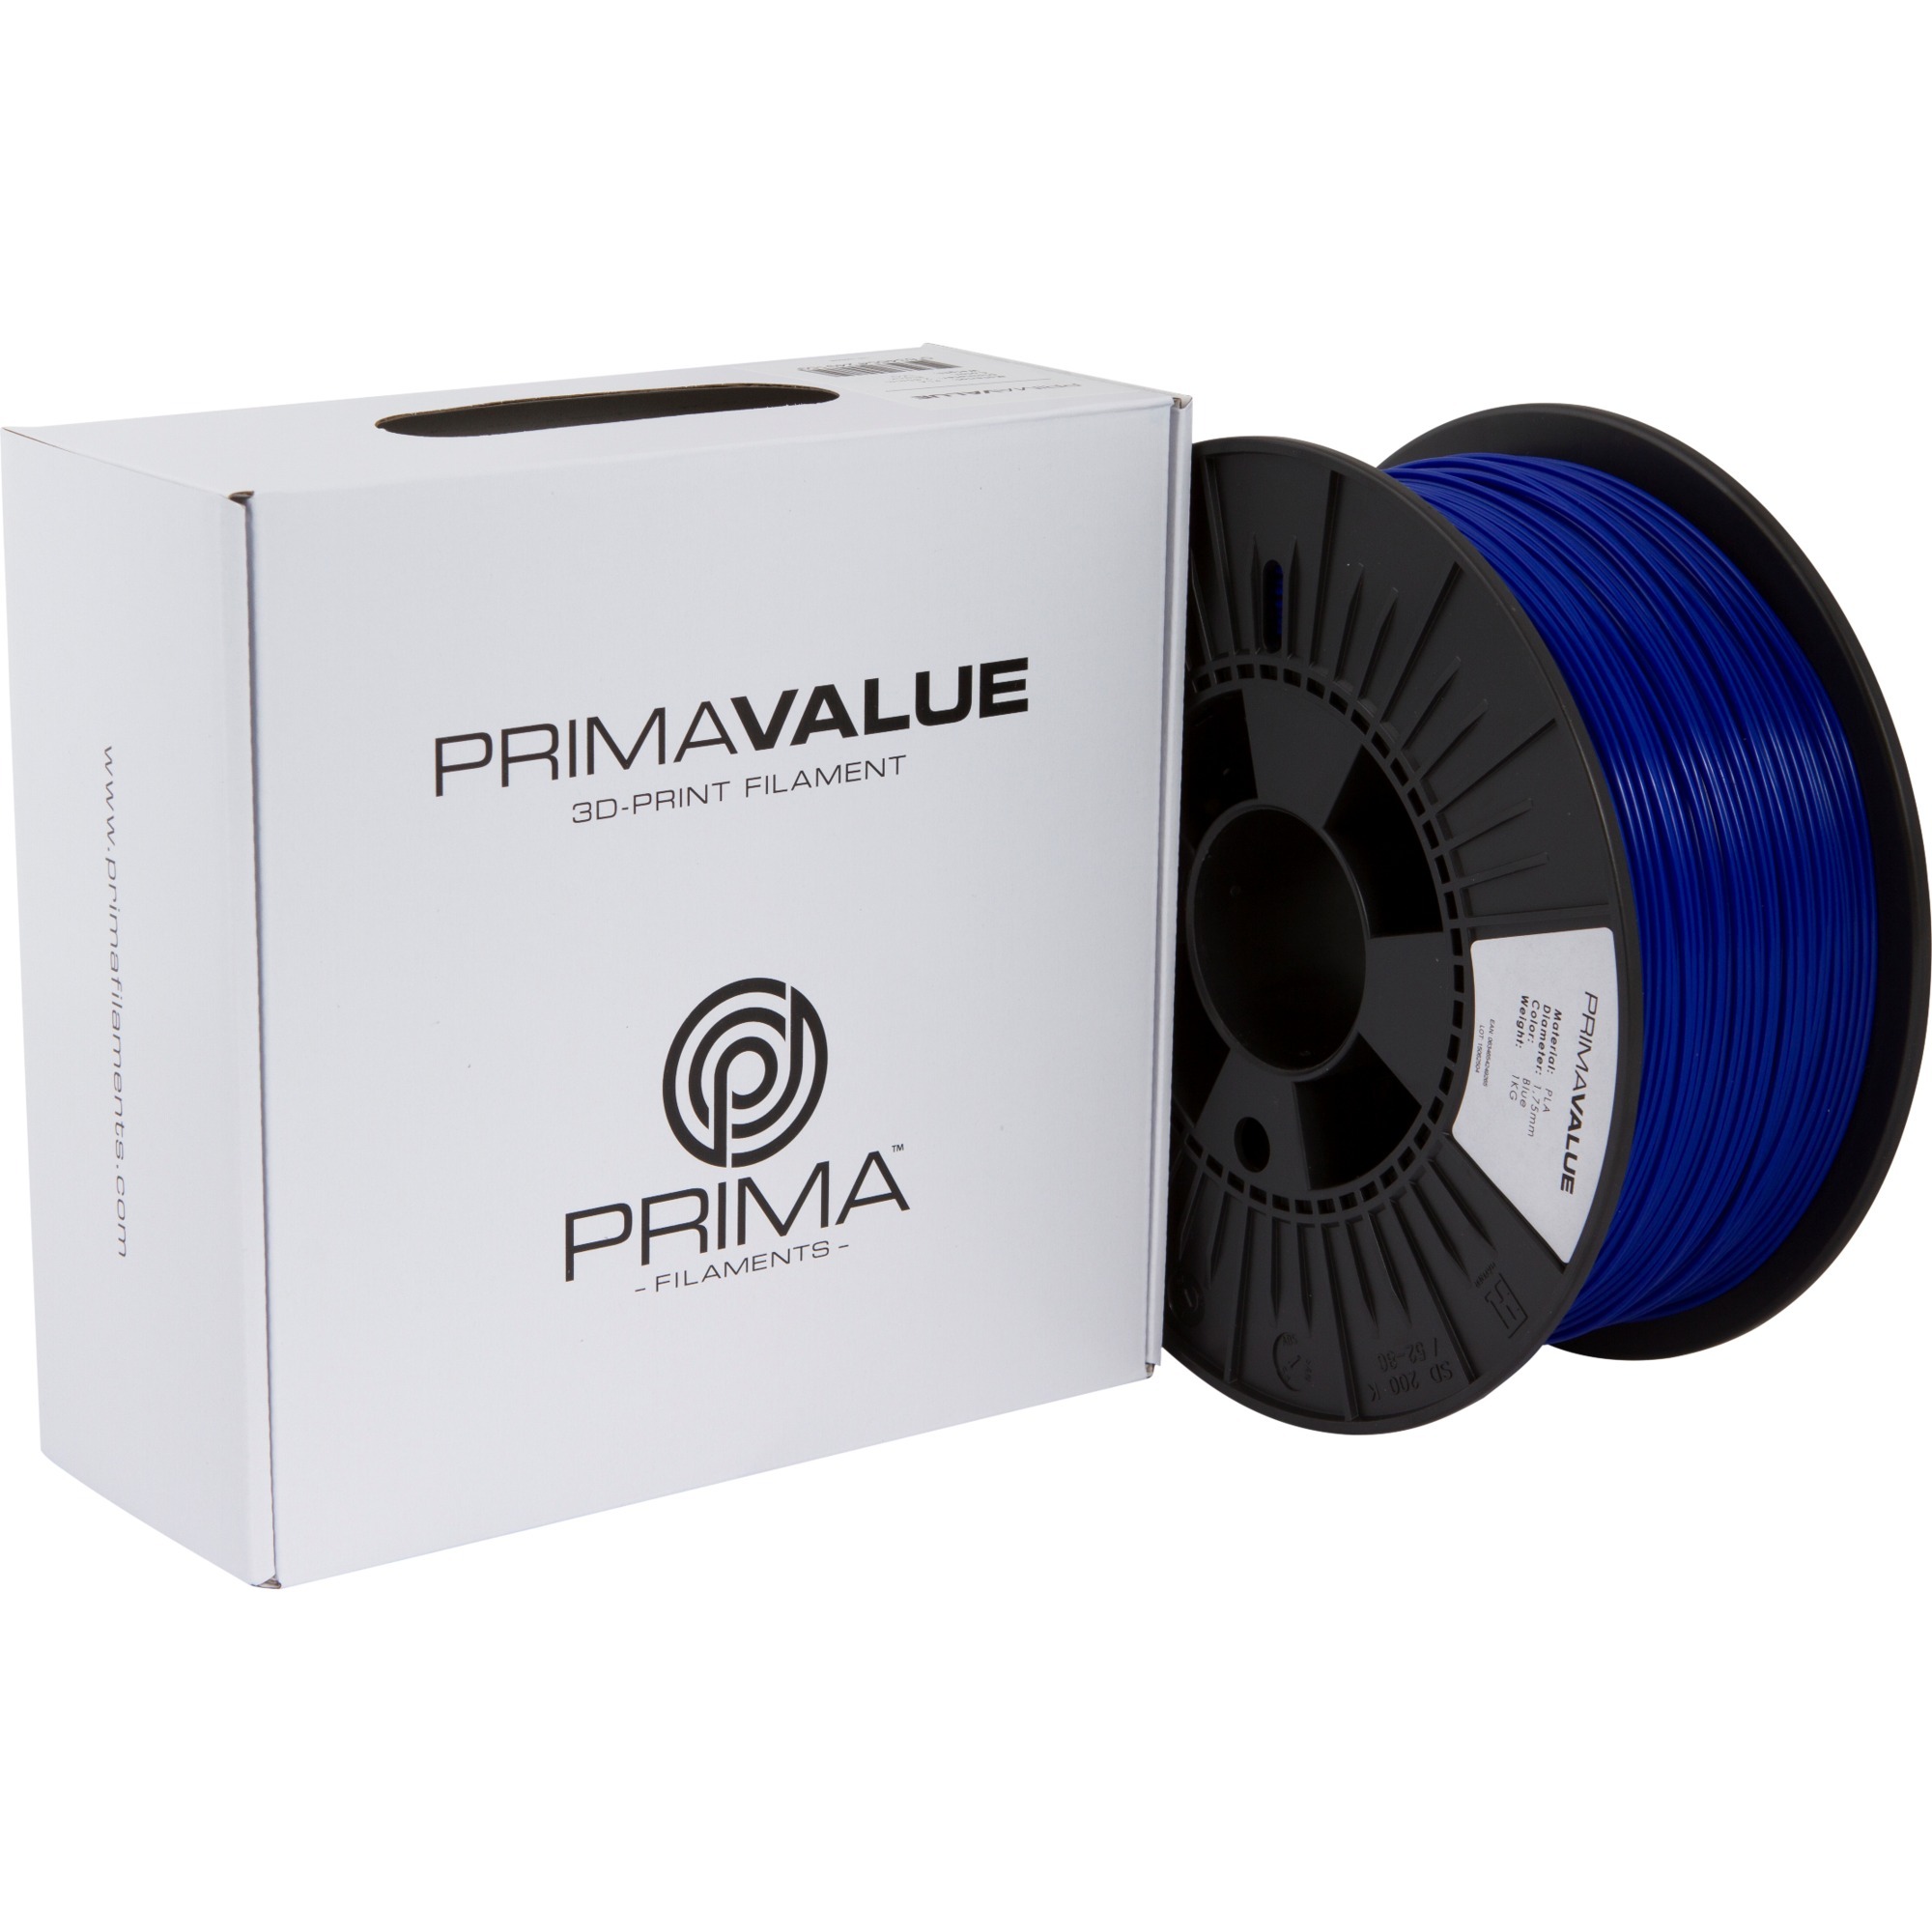 Image of Alternate - PrimaValue PLA Blue, 3D-Kartusche online einkaufen bei Alternate